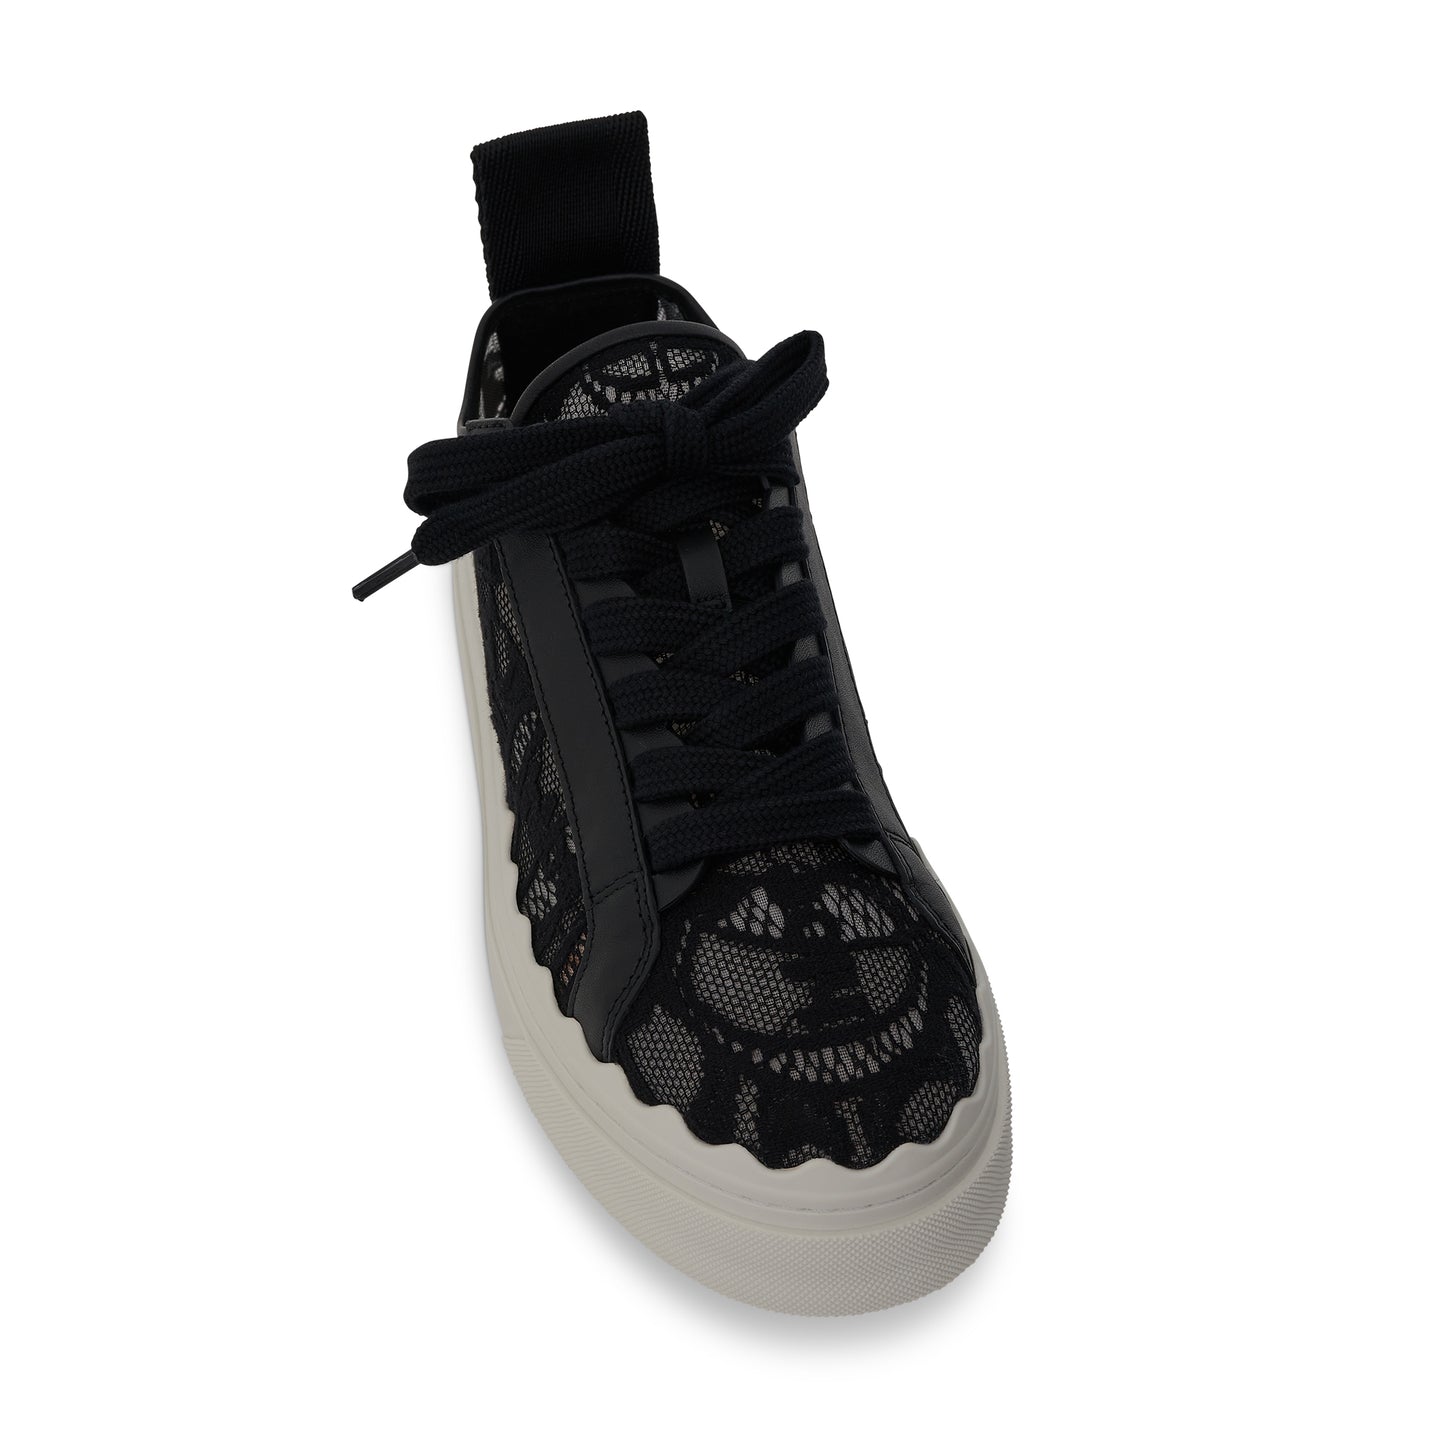 Lauren Sneaker in Black Lace